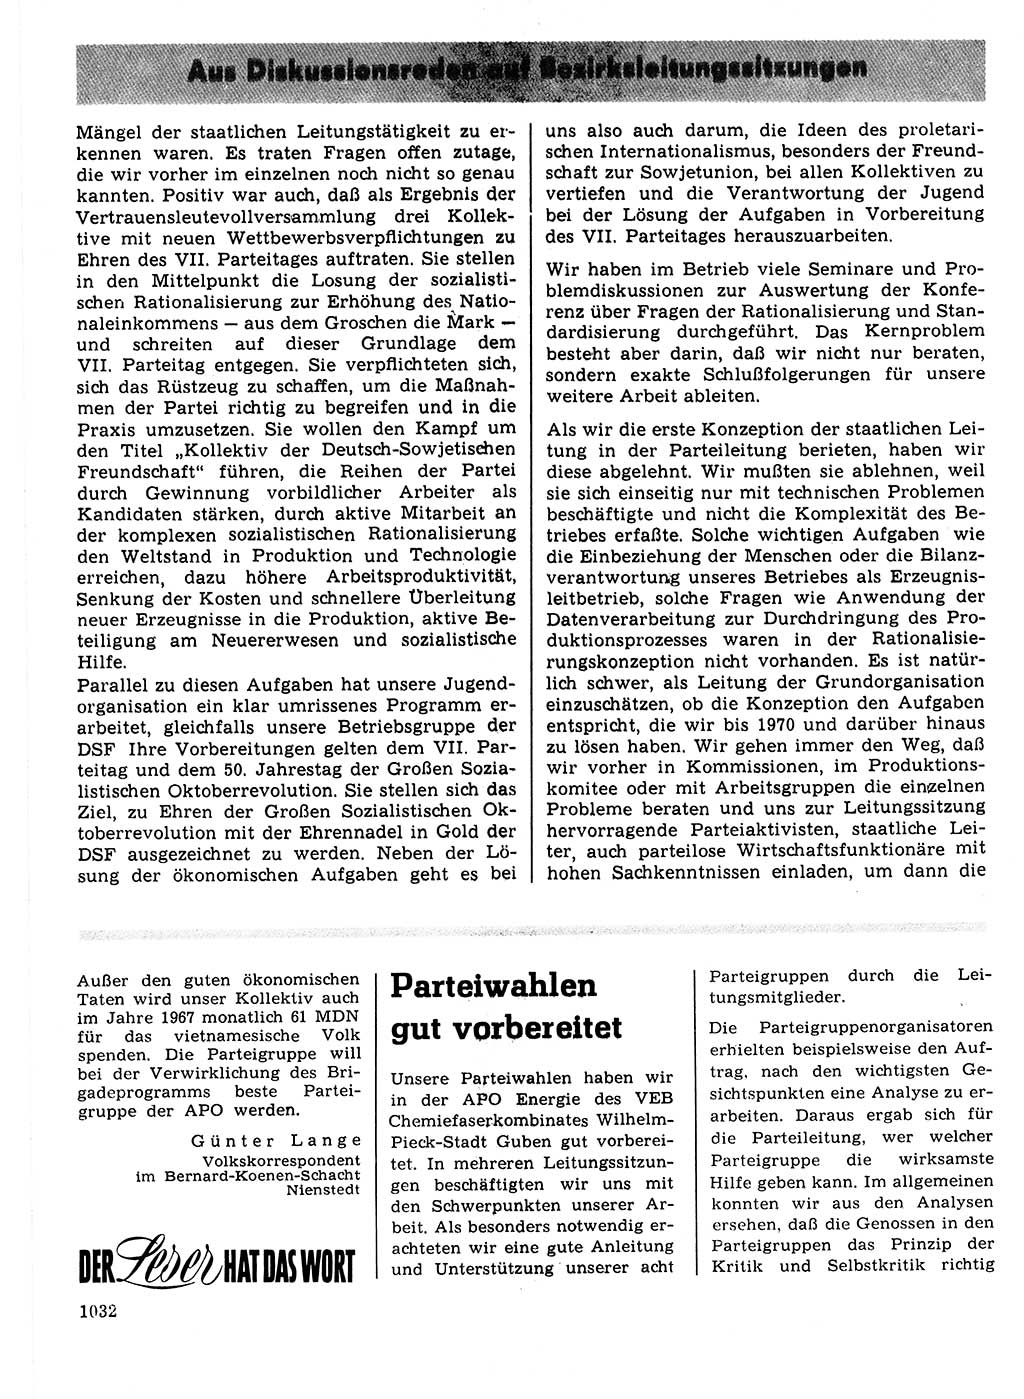 Neuer Weg (NW), Organ des Zentralkomitees (ZK) der SED (Sozialistische Einheitspartei Deutschlands) für Fragen des Parteilebens, 21. Jahrgang [Deutsche Demokratische Republik (DDR)] 1966, Seite 1032 (NW ZK SED DDR 1966, S. 1032)